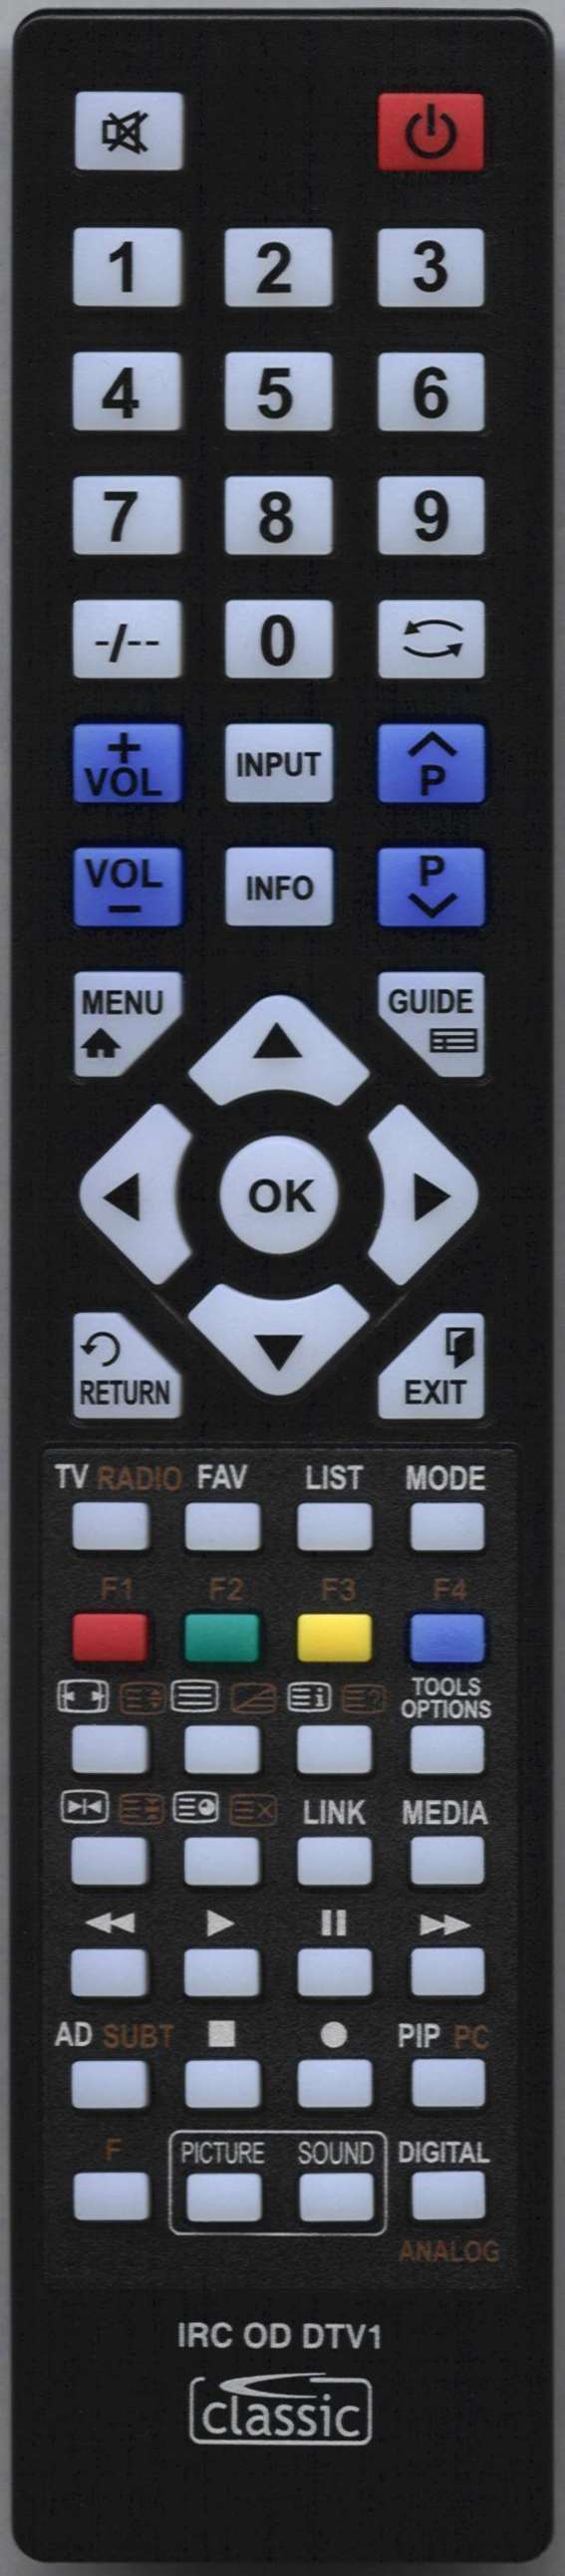 LUXOR 10108398 Remote Control Alternative